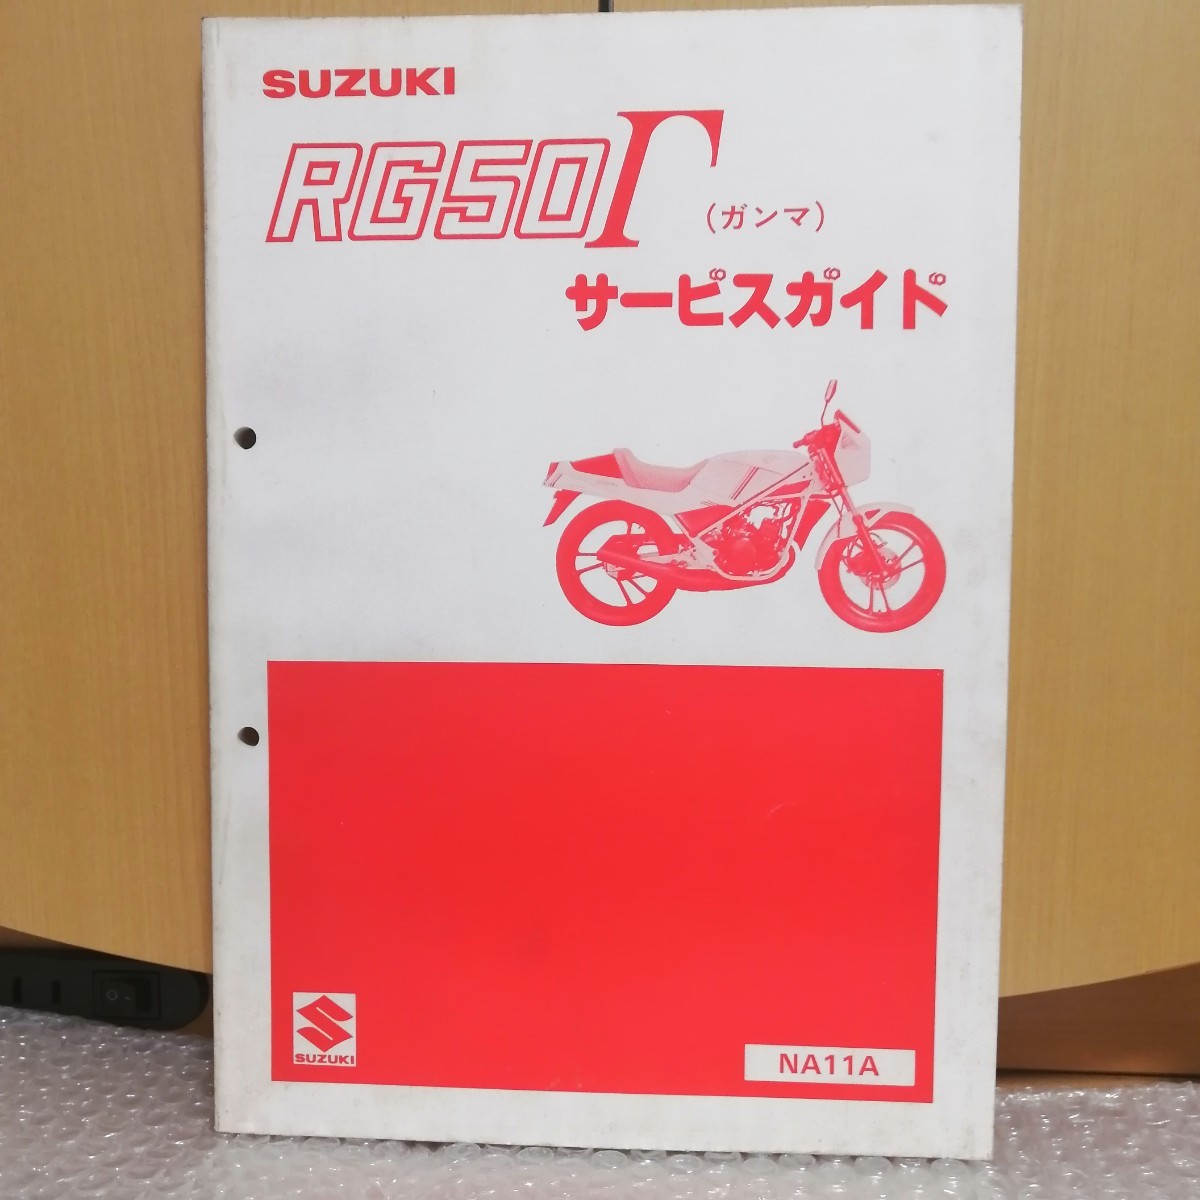  Suzuki RG50Γ Gamma NA11A type service guide / service manual maintenance restore service book repair book 